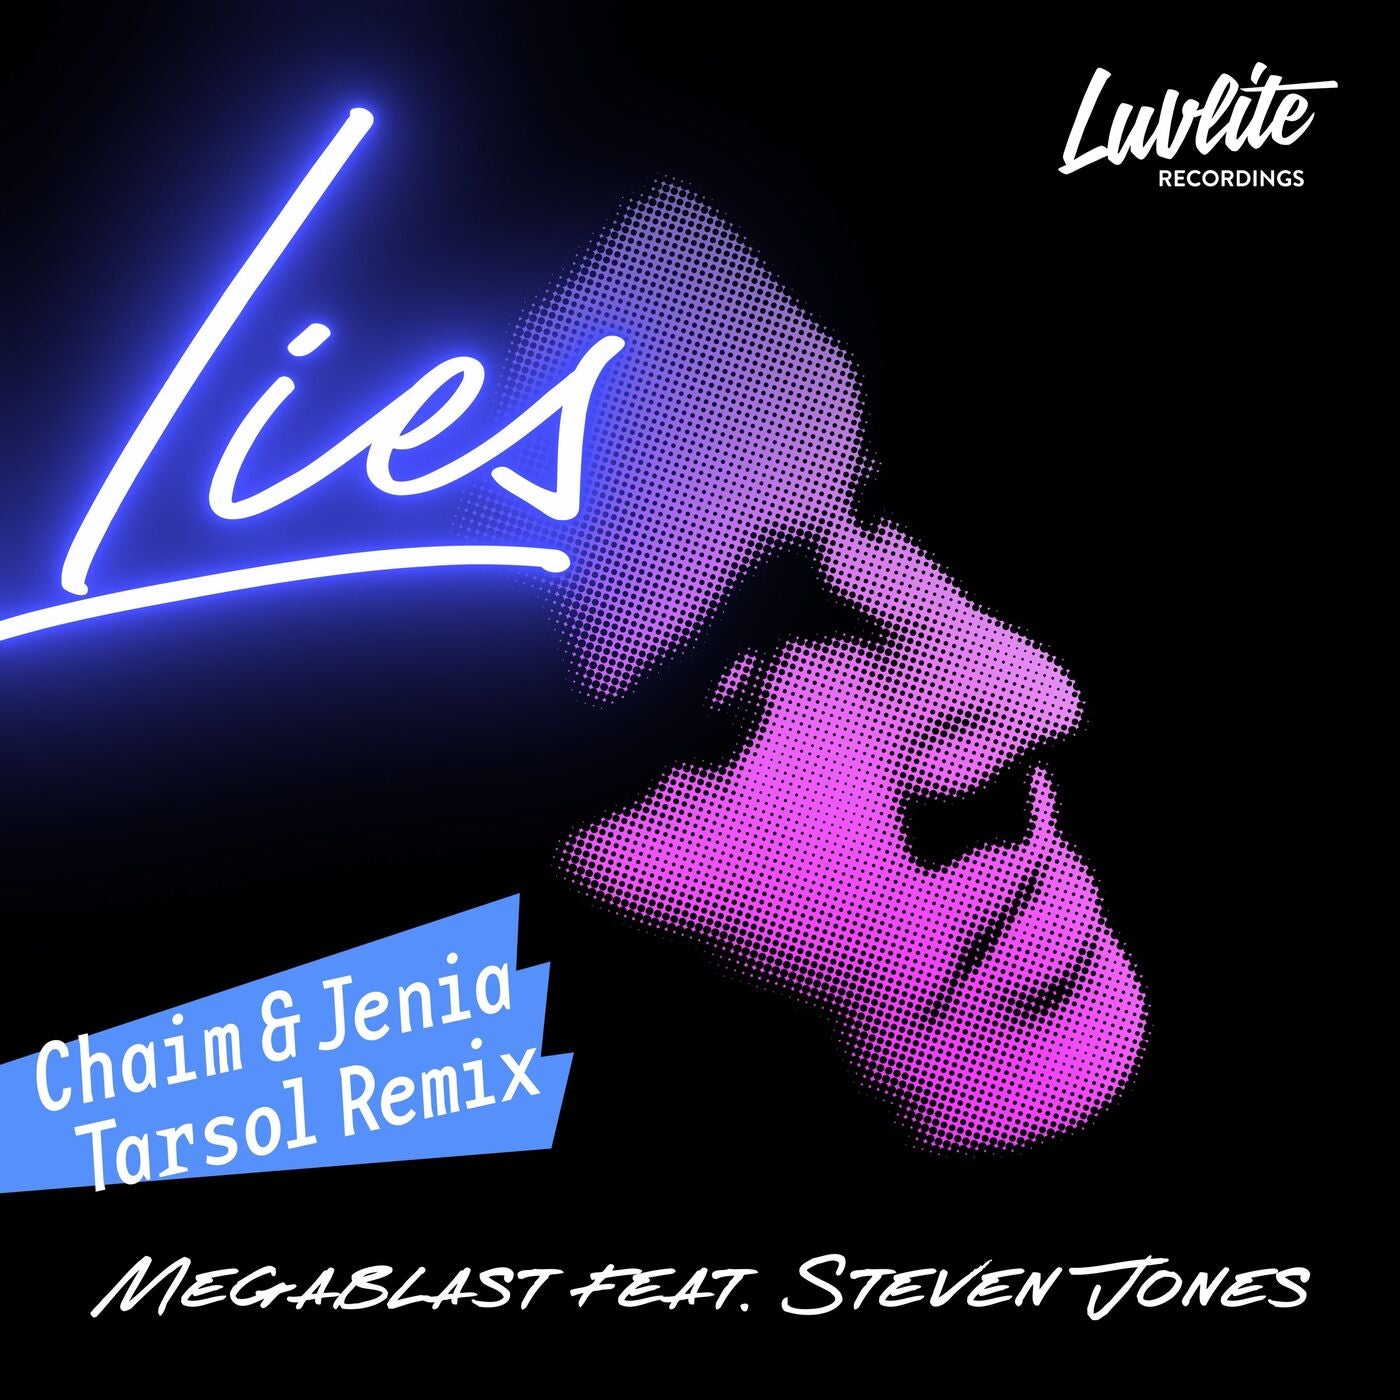 Megablast, Steven Jones - Lies (Chaim & Jenia Tarsol Remix) [LL009]